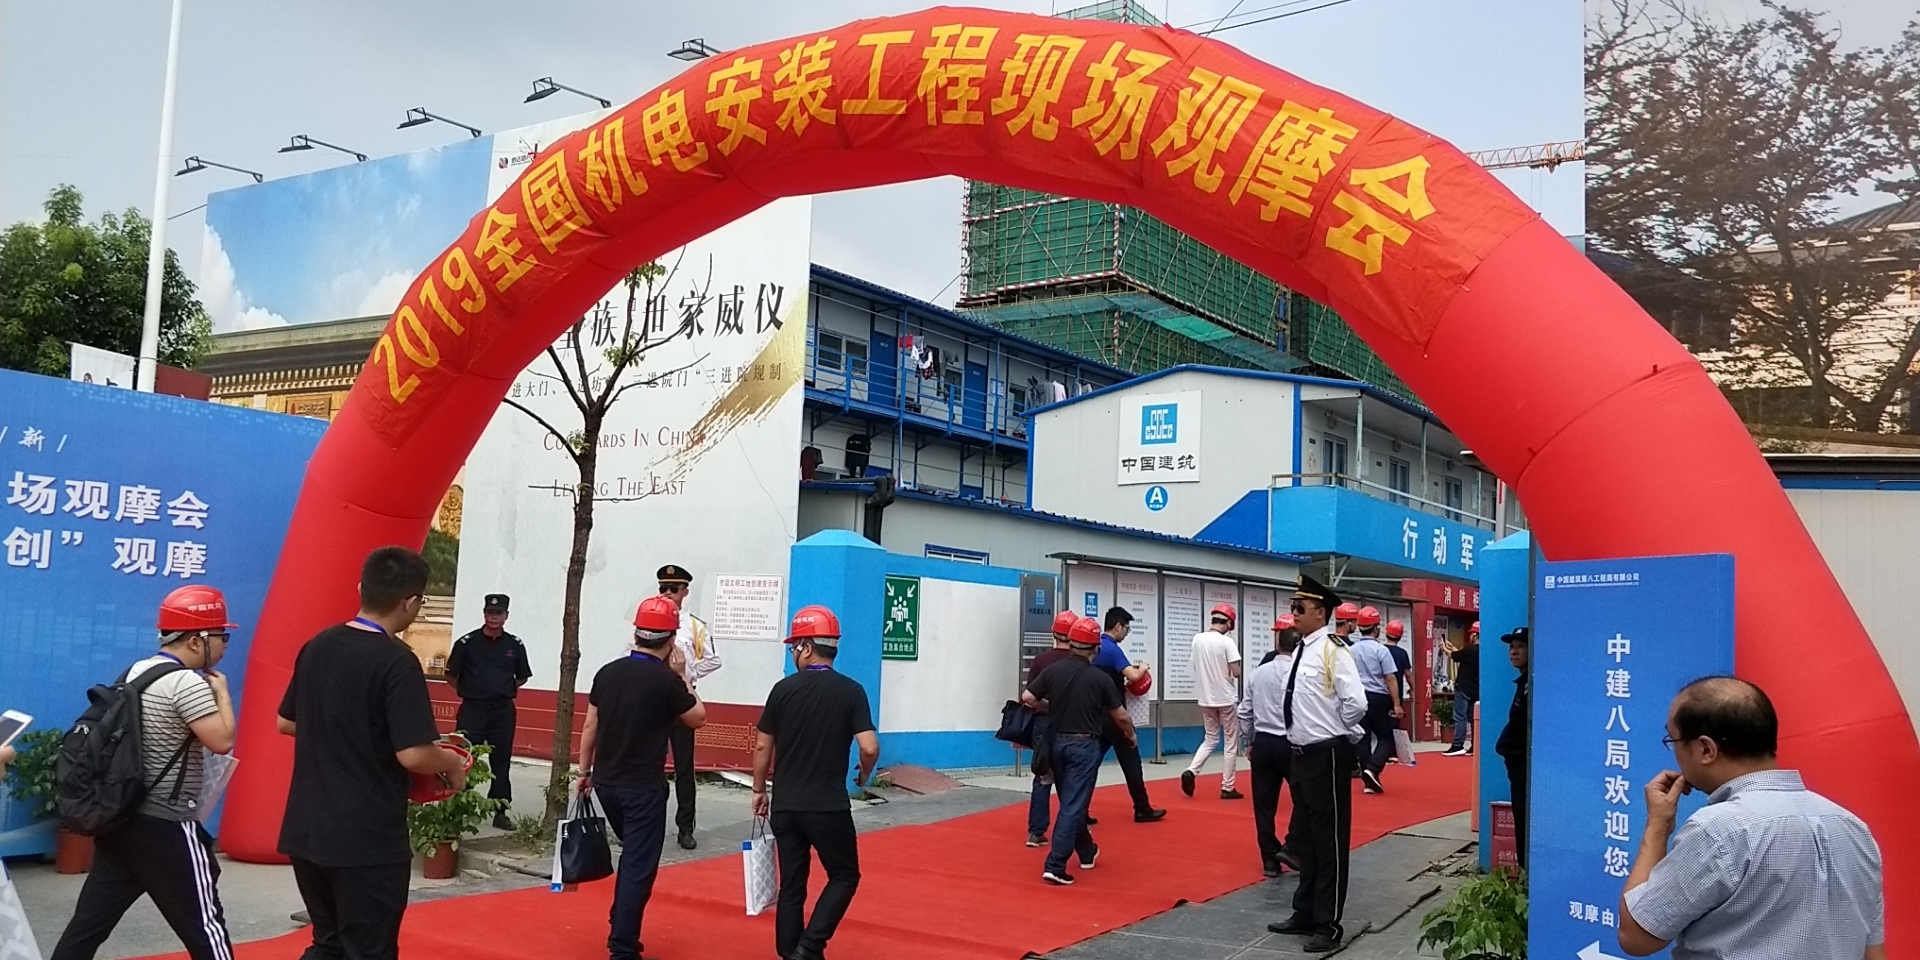 上海深海宏添建材带您领略“2019全国机电安装工程现场观摩会”现场风采